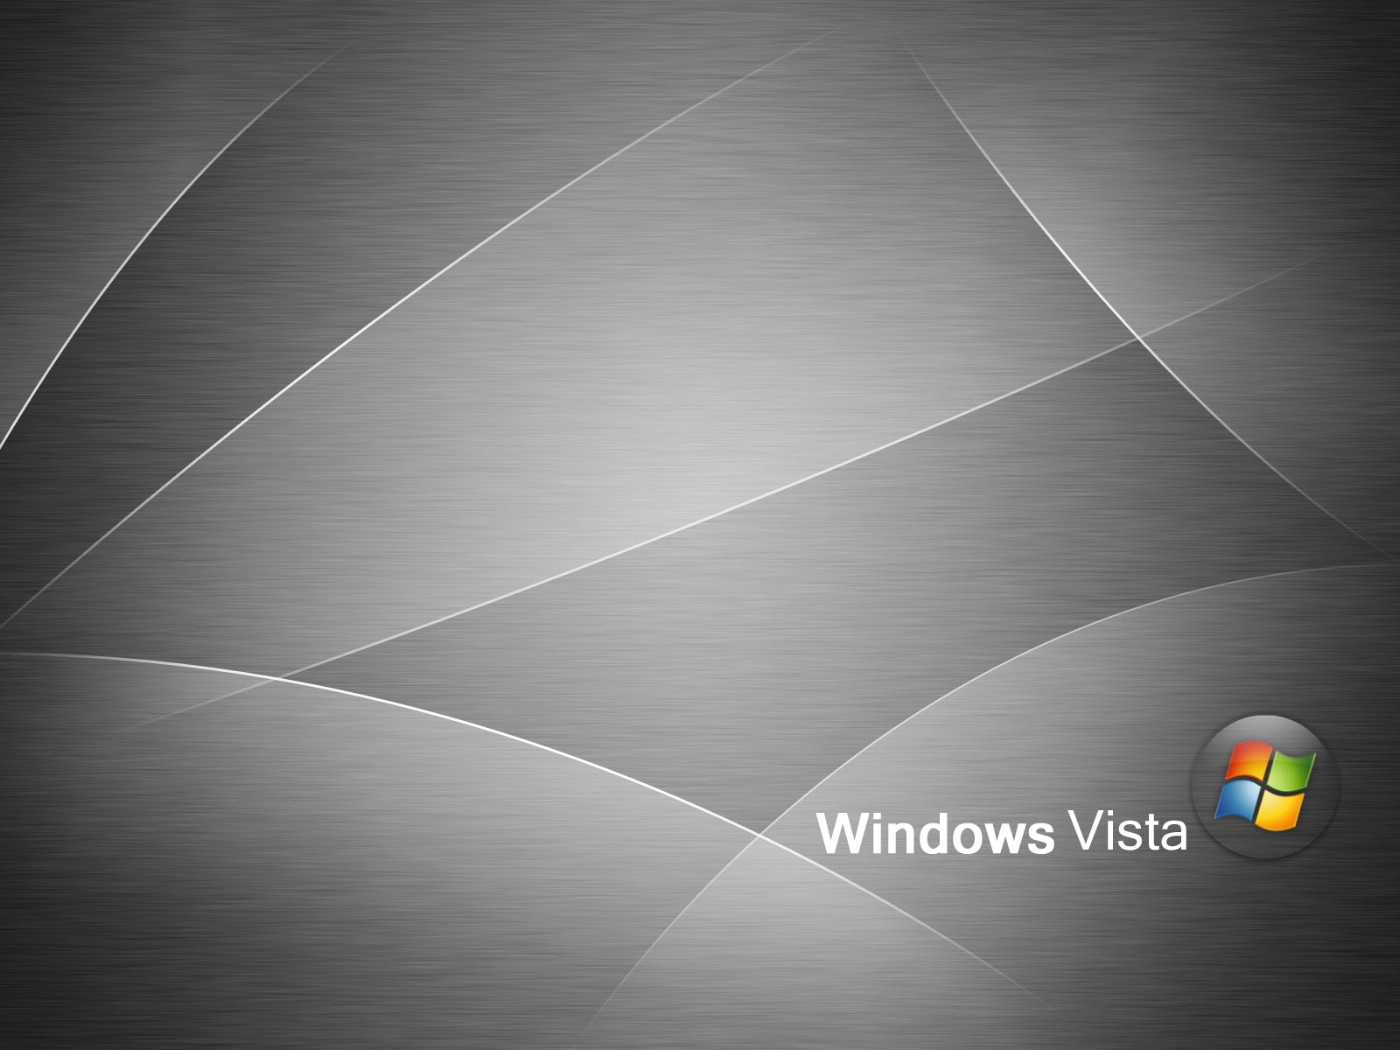 壁纸1400x1050超高分辨率Windows Vista简约壁纸壁纸 超高分辨率Windows Vista简约壁纸壁纸 超高分辨率Windows Vista简约壁纸图片 超高分辨率Windows Vista简约壁纸素材 创意壁纸 创意图库 创意图片素材桌面壁纸